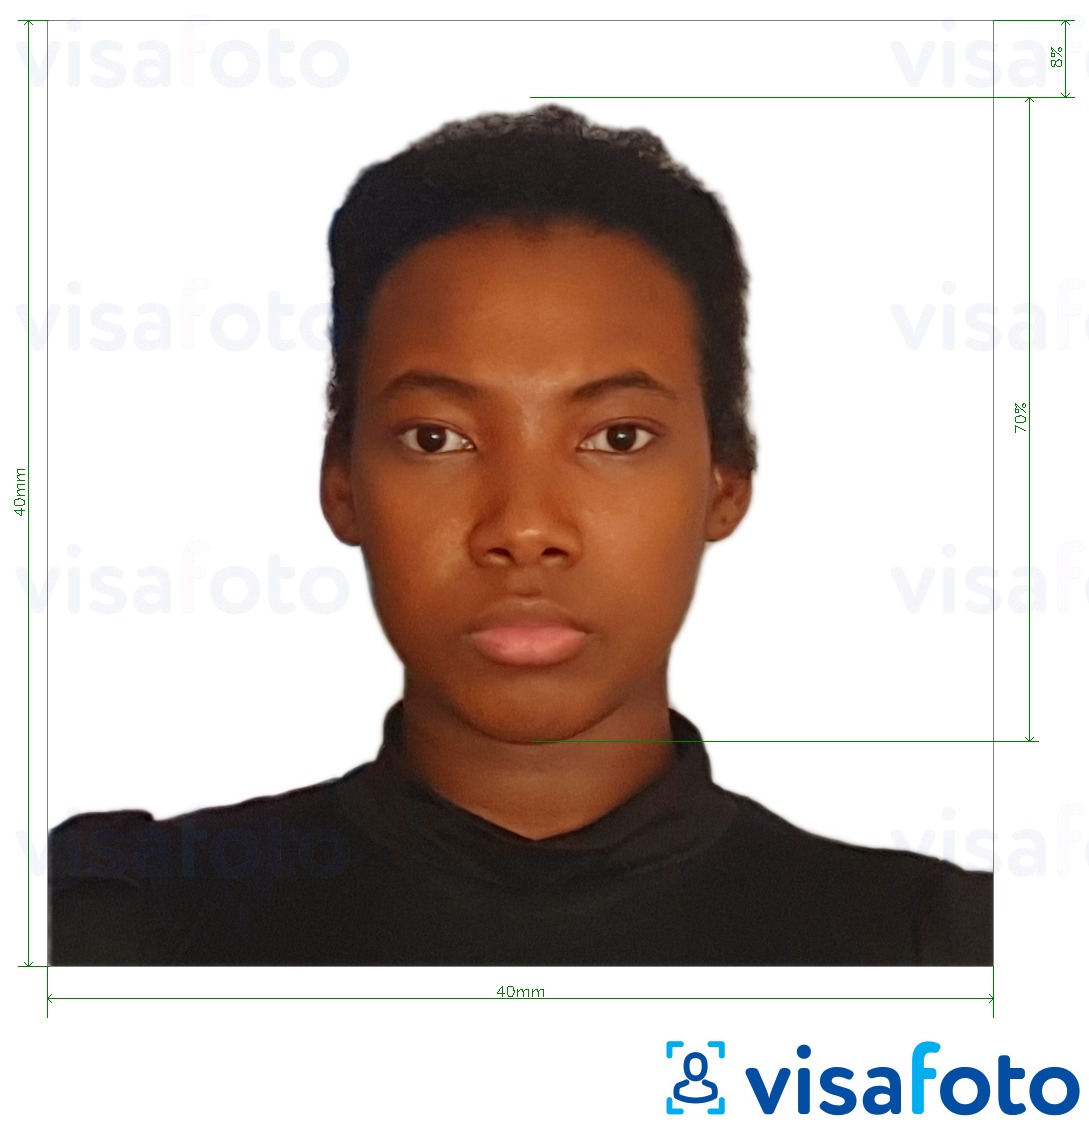 马达加斯加签证40x40毫米 的标准尺寸照片示例